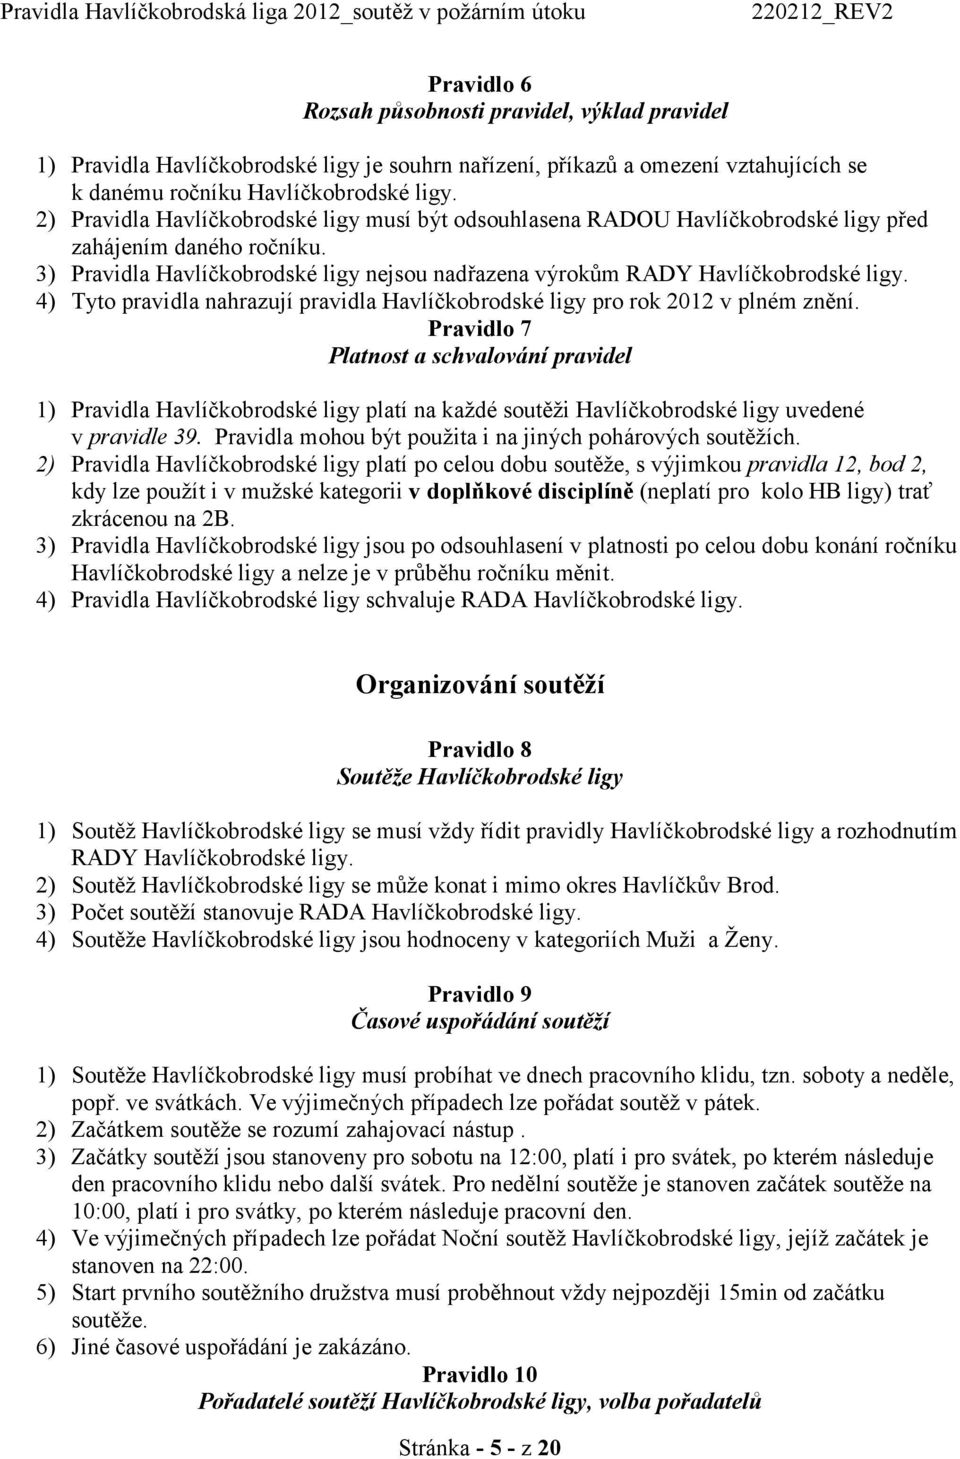 4) Tyto pravidla nahrazují pravidla Havlíčkobrodské ligy pro rok 2012 v plném znění.